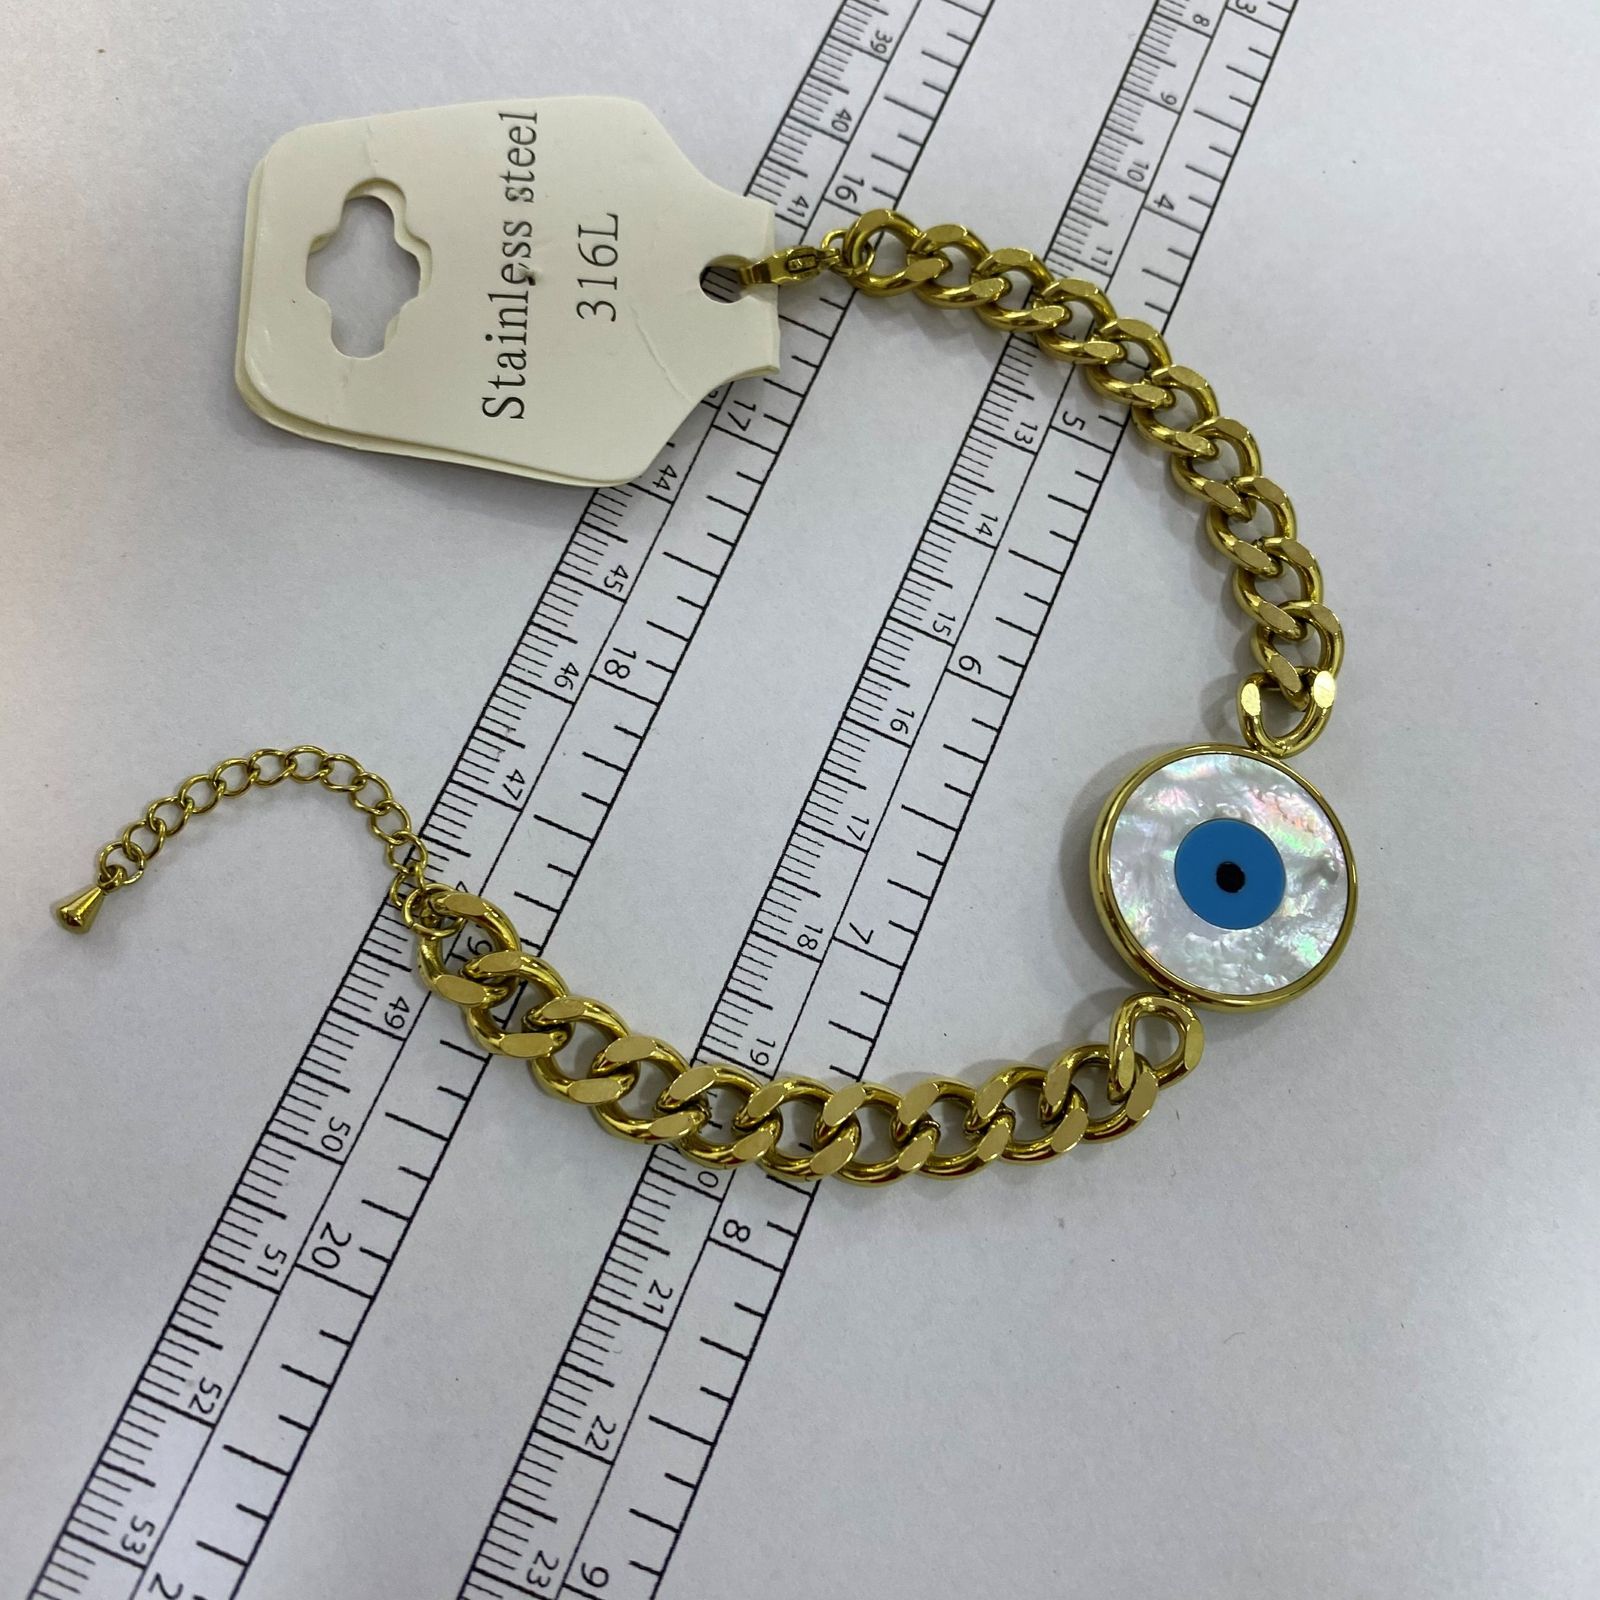 دستبند زنانه استینلس استیل مدل چشم نظر کد B3250 -  - 2